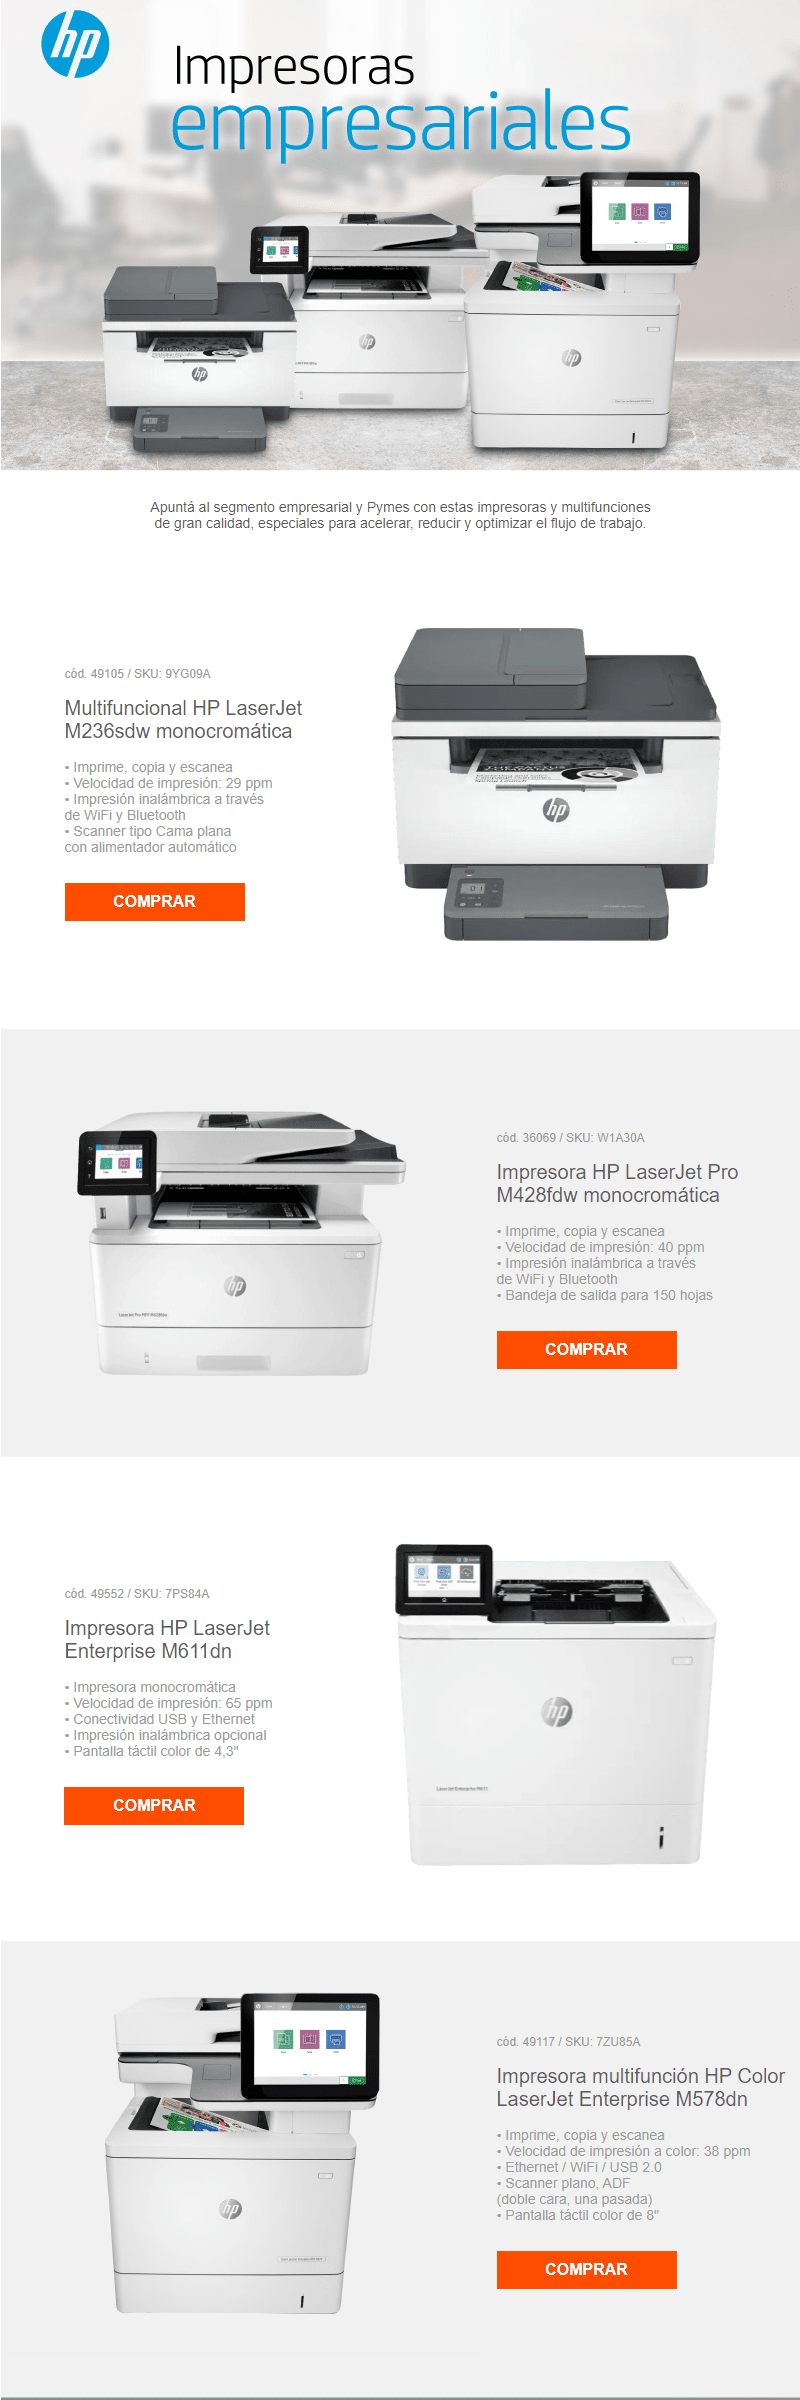 ¡Aprovecha las impresoras empresariales que HP tiene para vos!